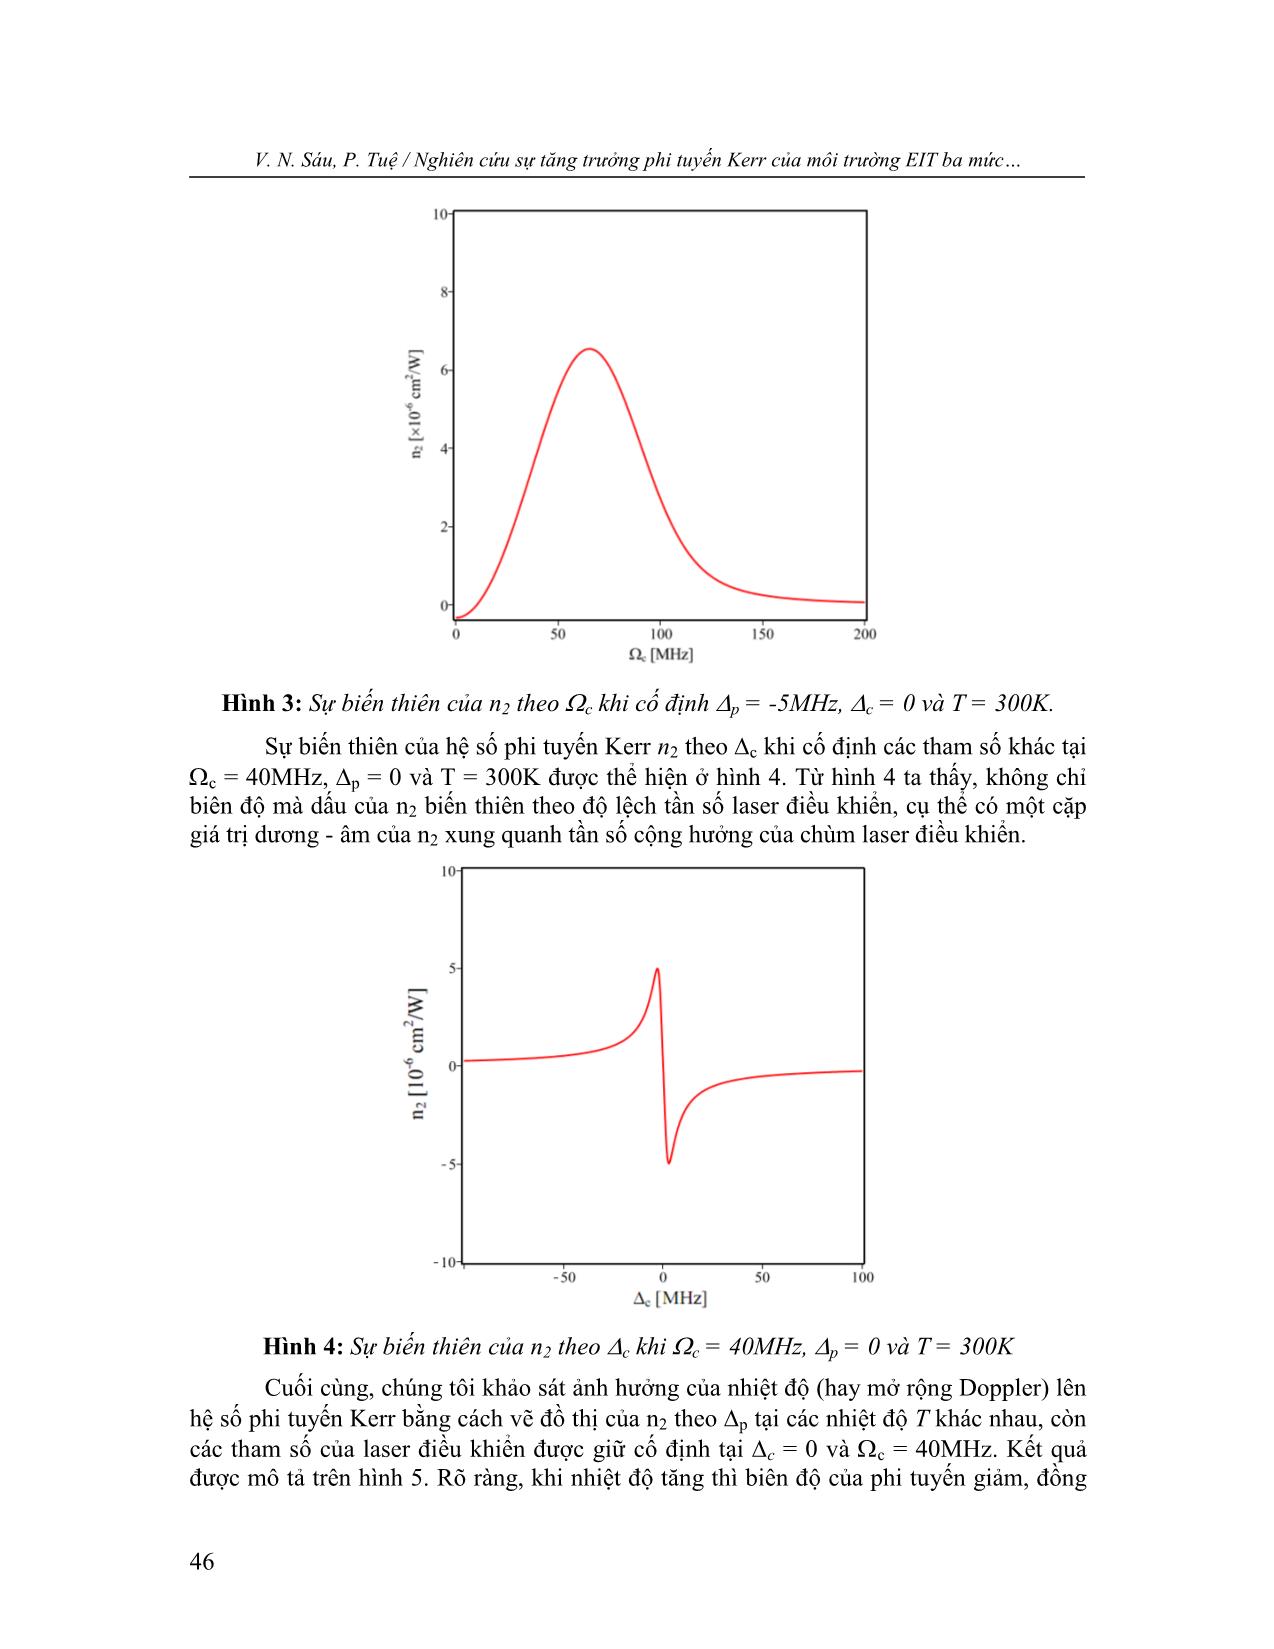 Nghiên cứu sự tăng cường phi tuyến Kerr của môi trường EIT ba mức bậc thang có mở rộng Doppler trang 7